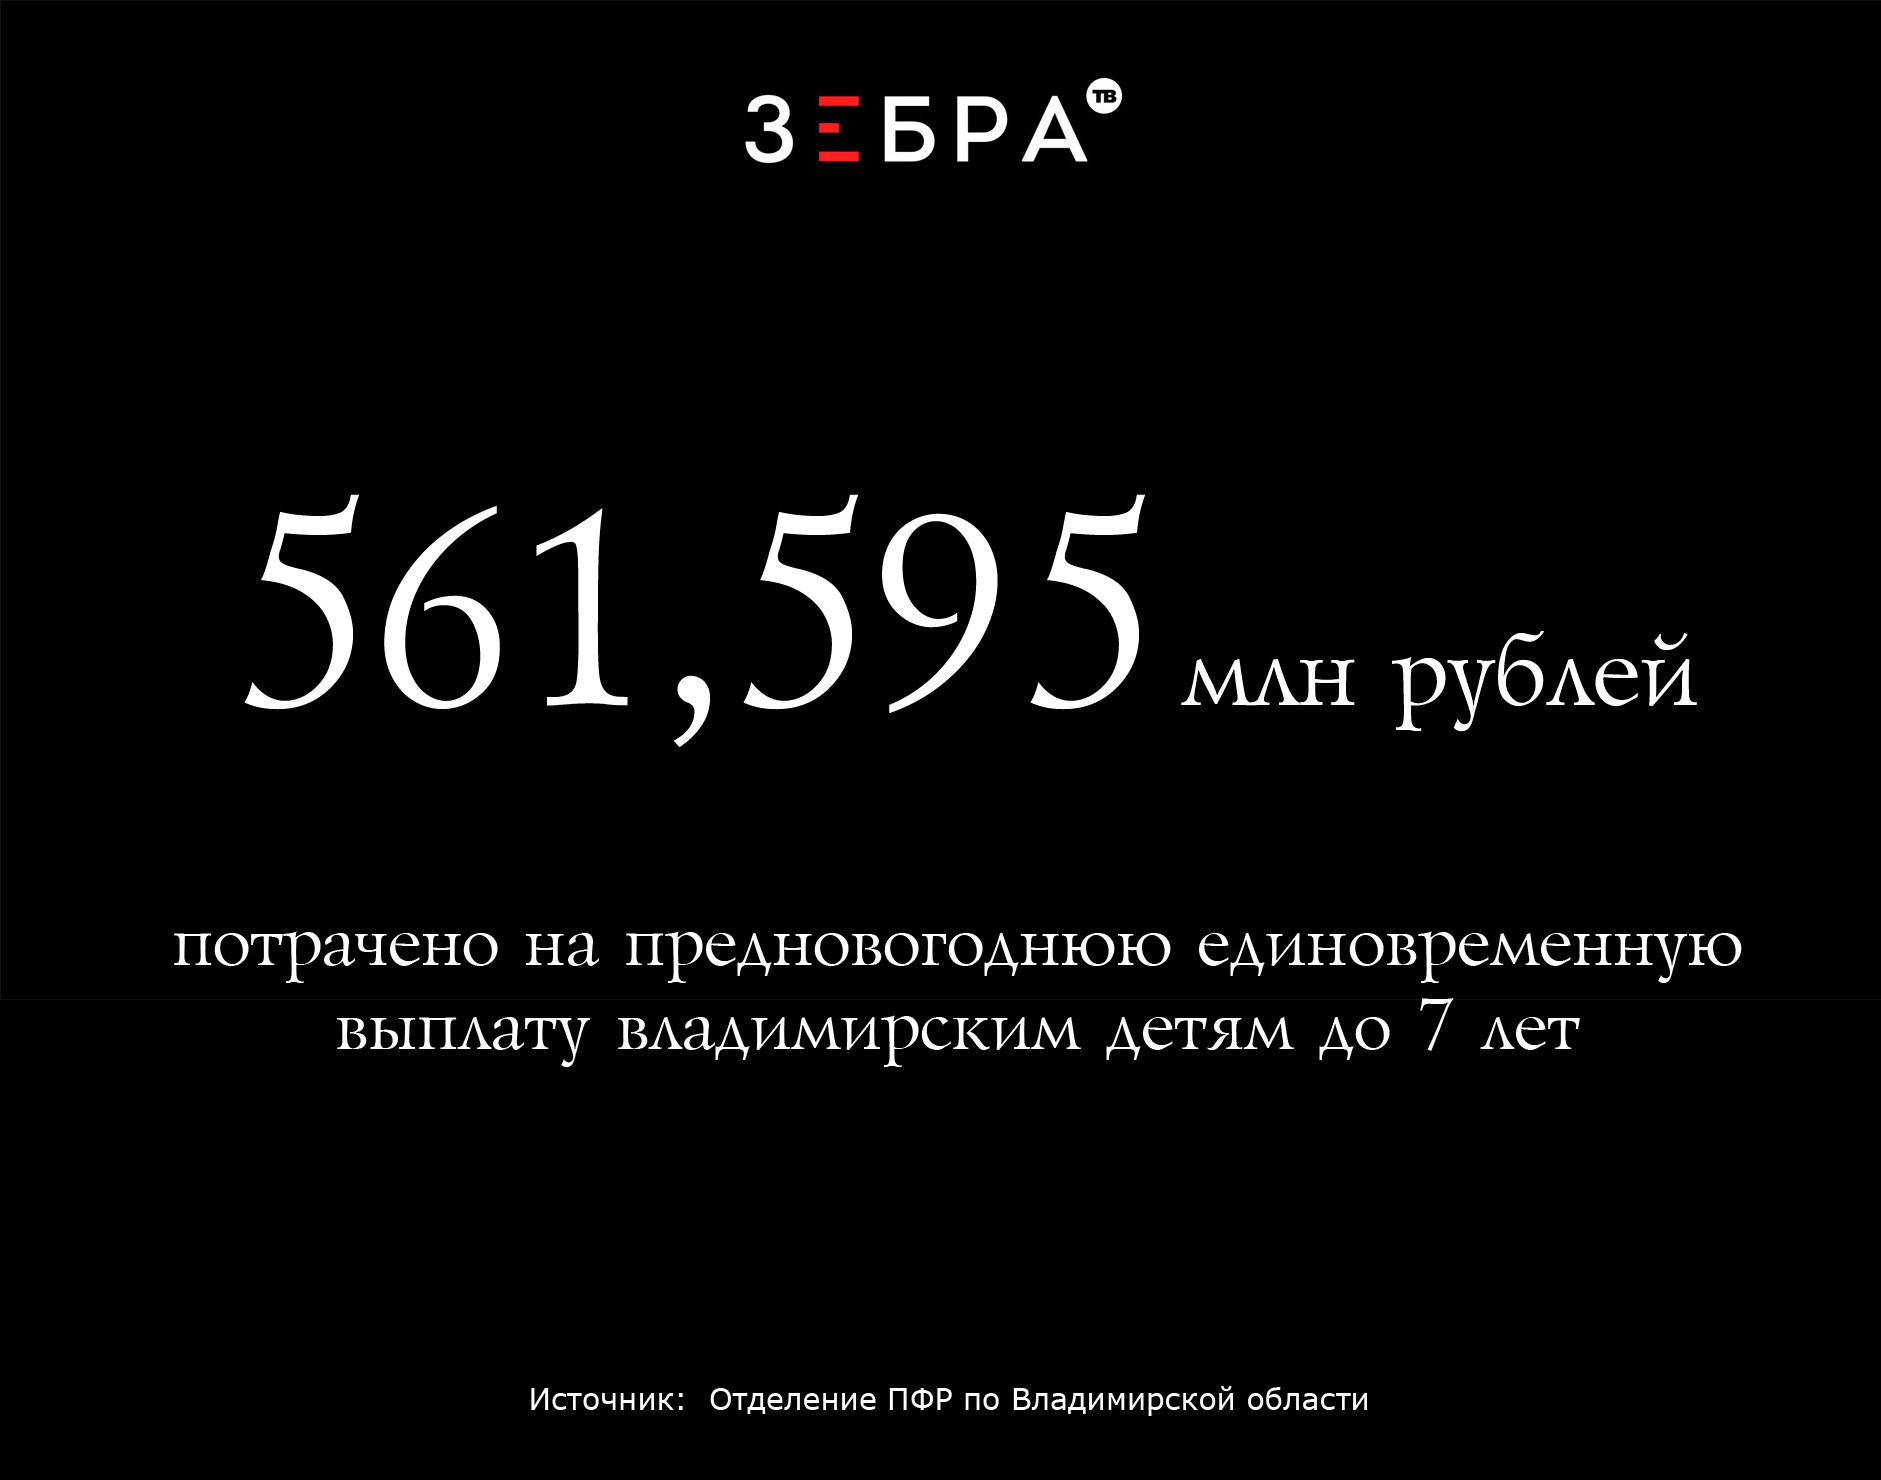 561,595 млн рублей потрачено на предновогоднюю единовременную выплату владимирским детям до 7 лет. Источник: Отделение ПФР по Владимирской области.